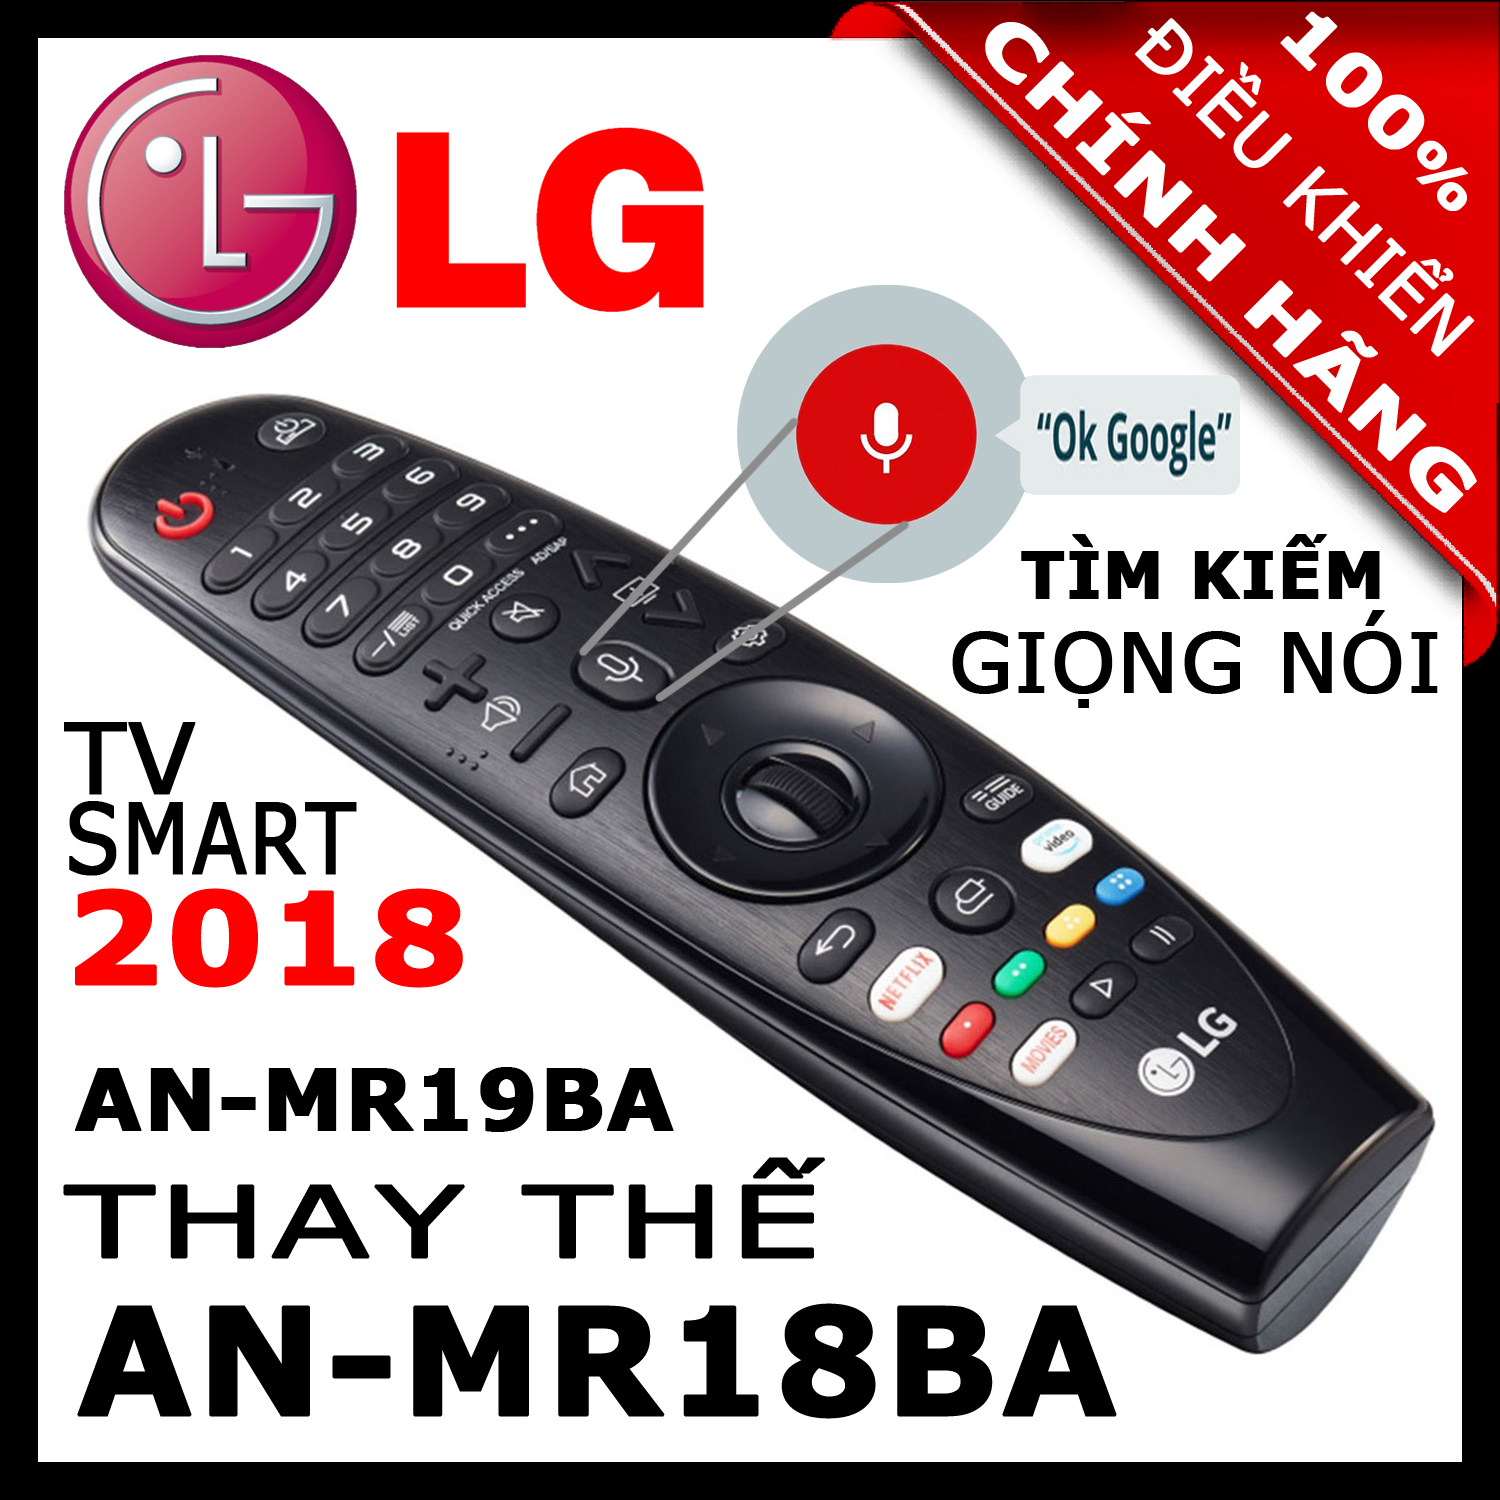 [ĐIỀU KHIỂN CHÍNH HÃNG] LG MR19BA thay thế MR18BA và MR650 có Giọng nói Chuột bay cho tivi LG 2019, 2018, 2017 Magic Remote AN-MR19BA HÀNG XỊN. Remote cho [tivi LG sản xuất năm 2018]